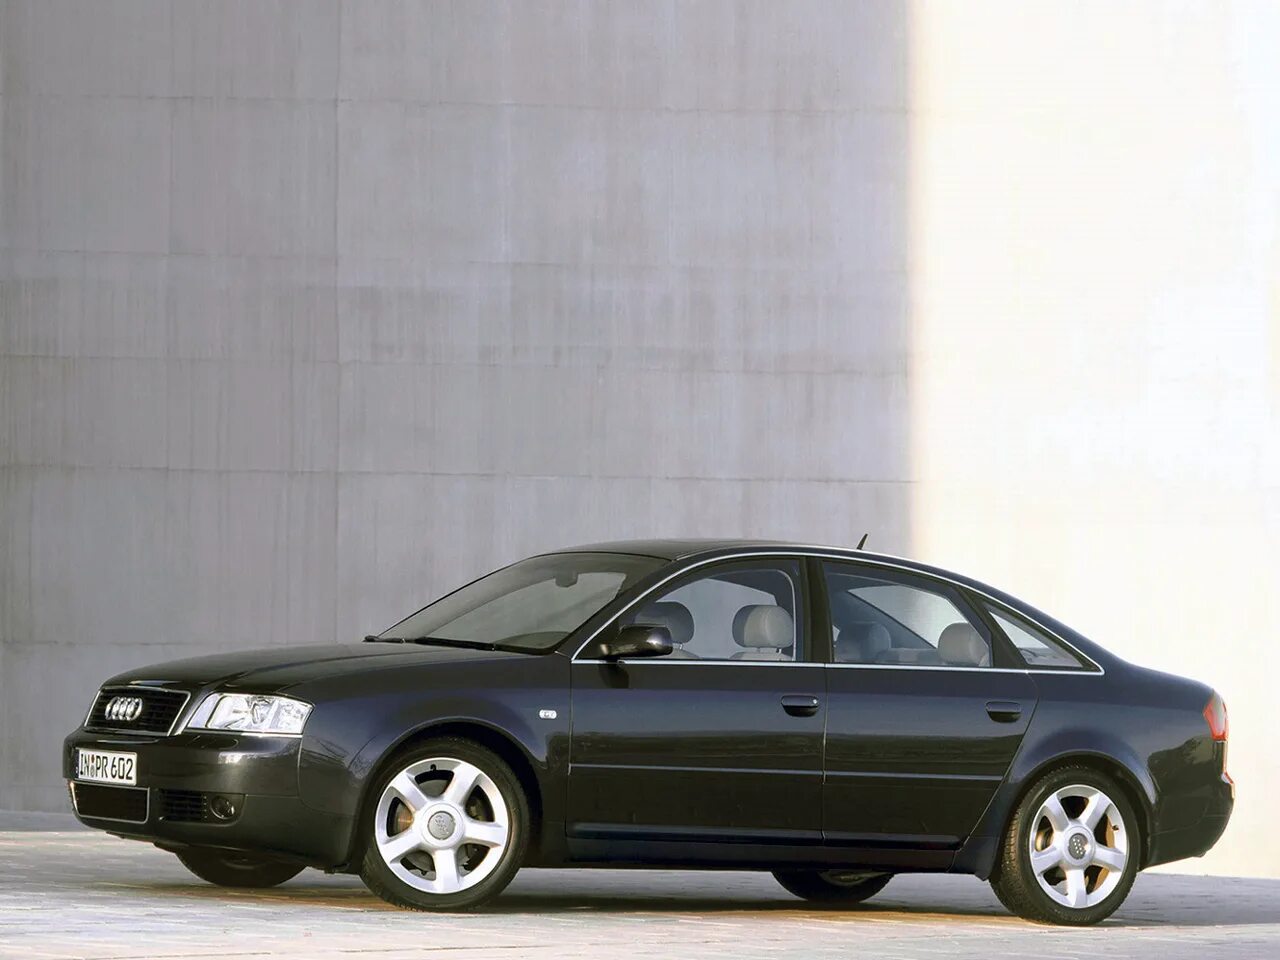 Ауди а6 с5 3.0. Audi a6 c5. Audi a6 II (c5). Audi a6 c5 1997. Audi a6 c5 2004.